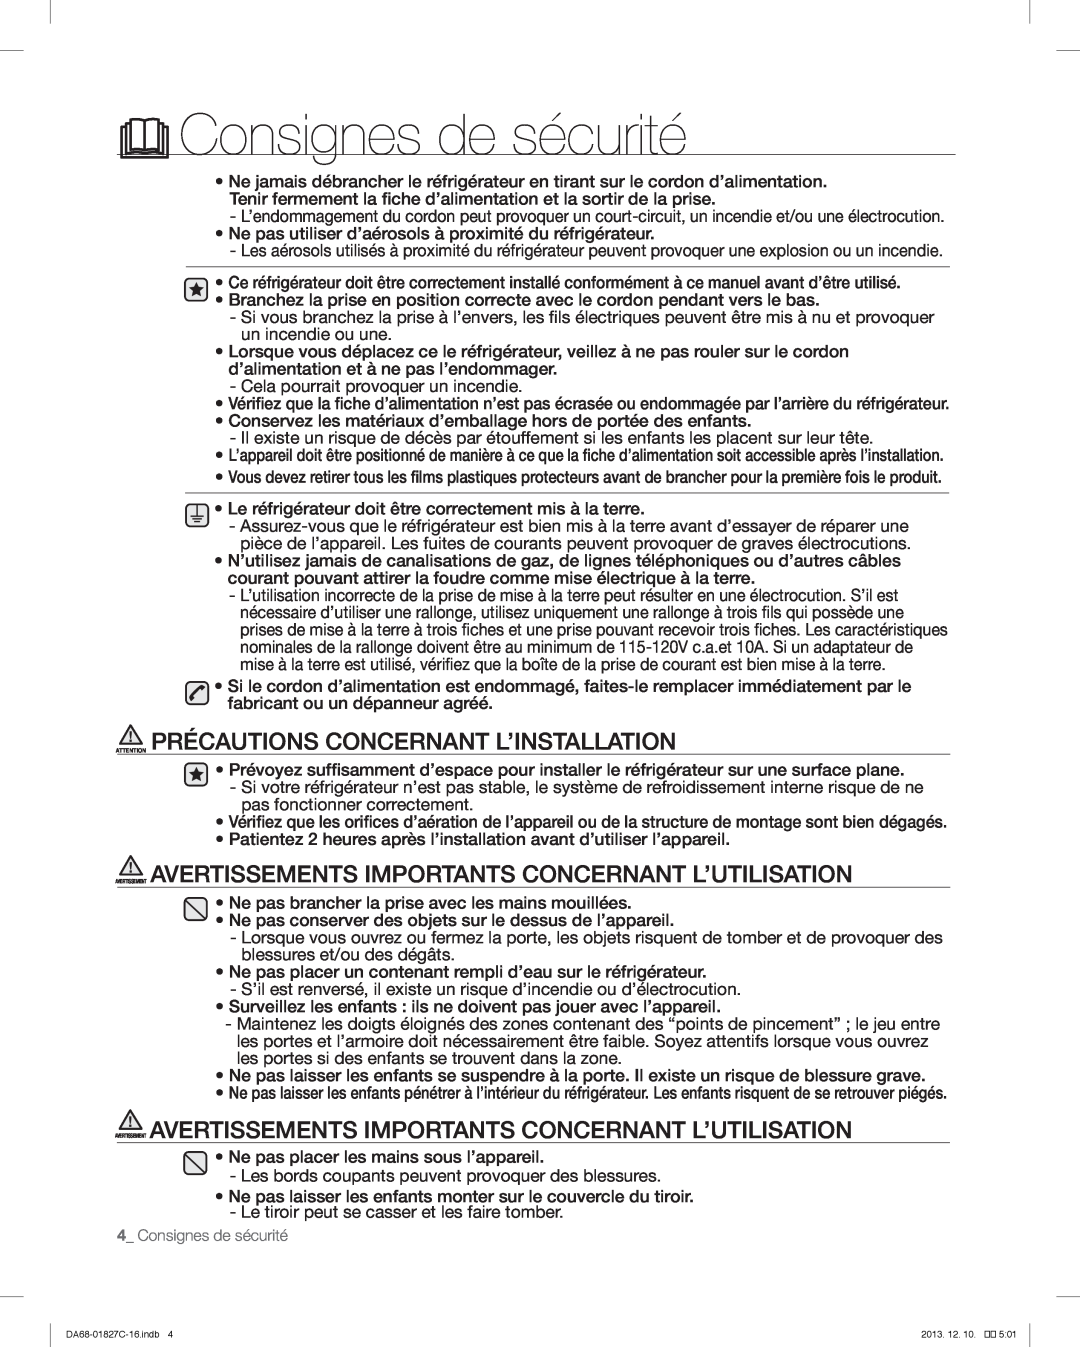 Samsung RFG237AARS user manual Attention Précautions Concernant L’Installation, Consignes de sécurité 